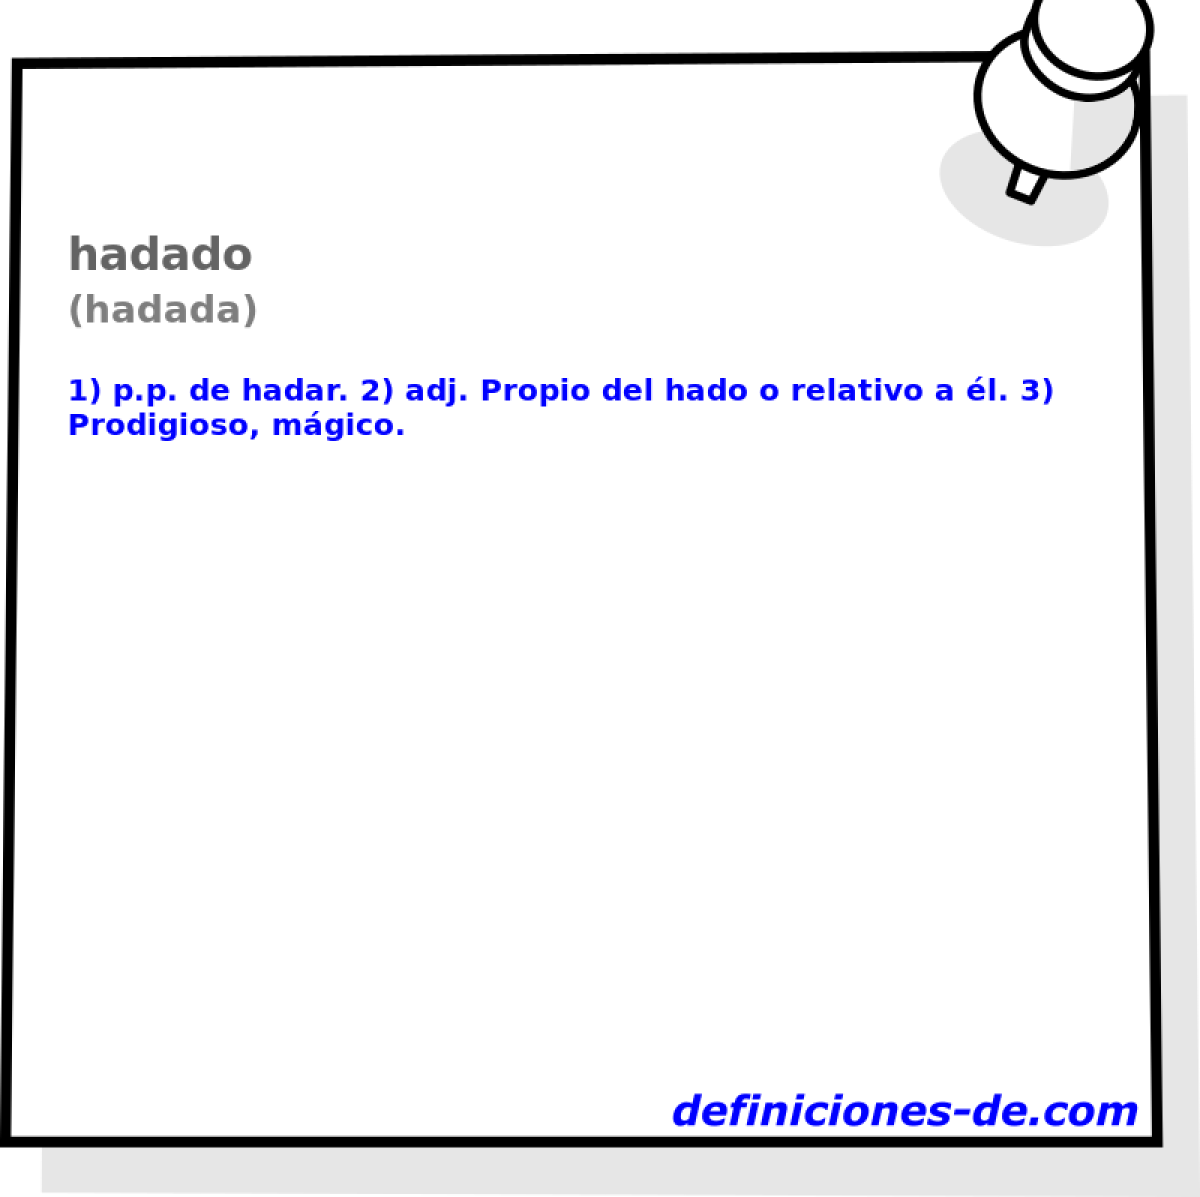 hadado (hadada)